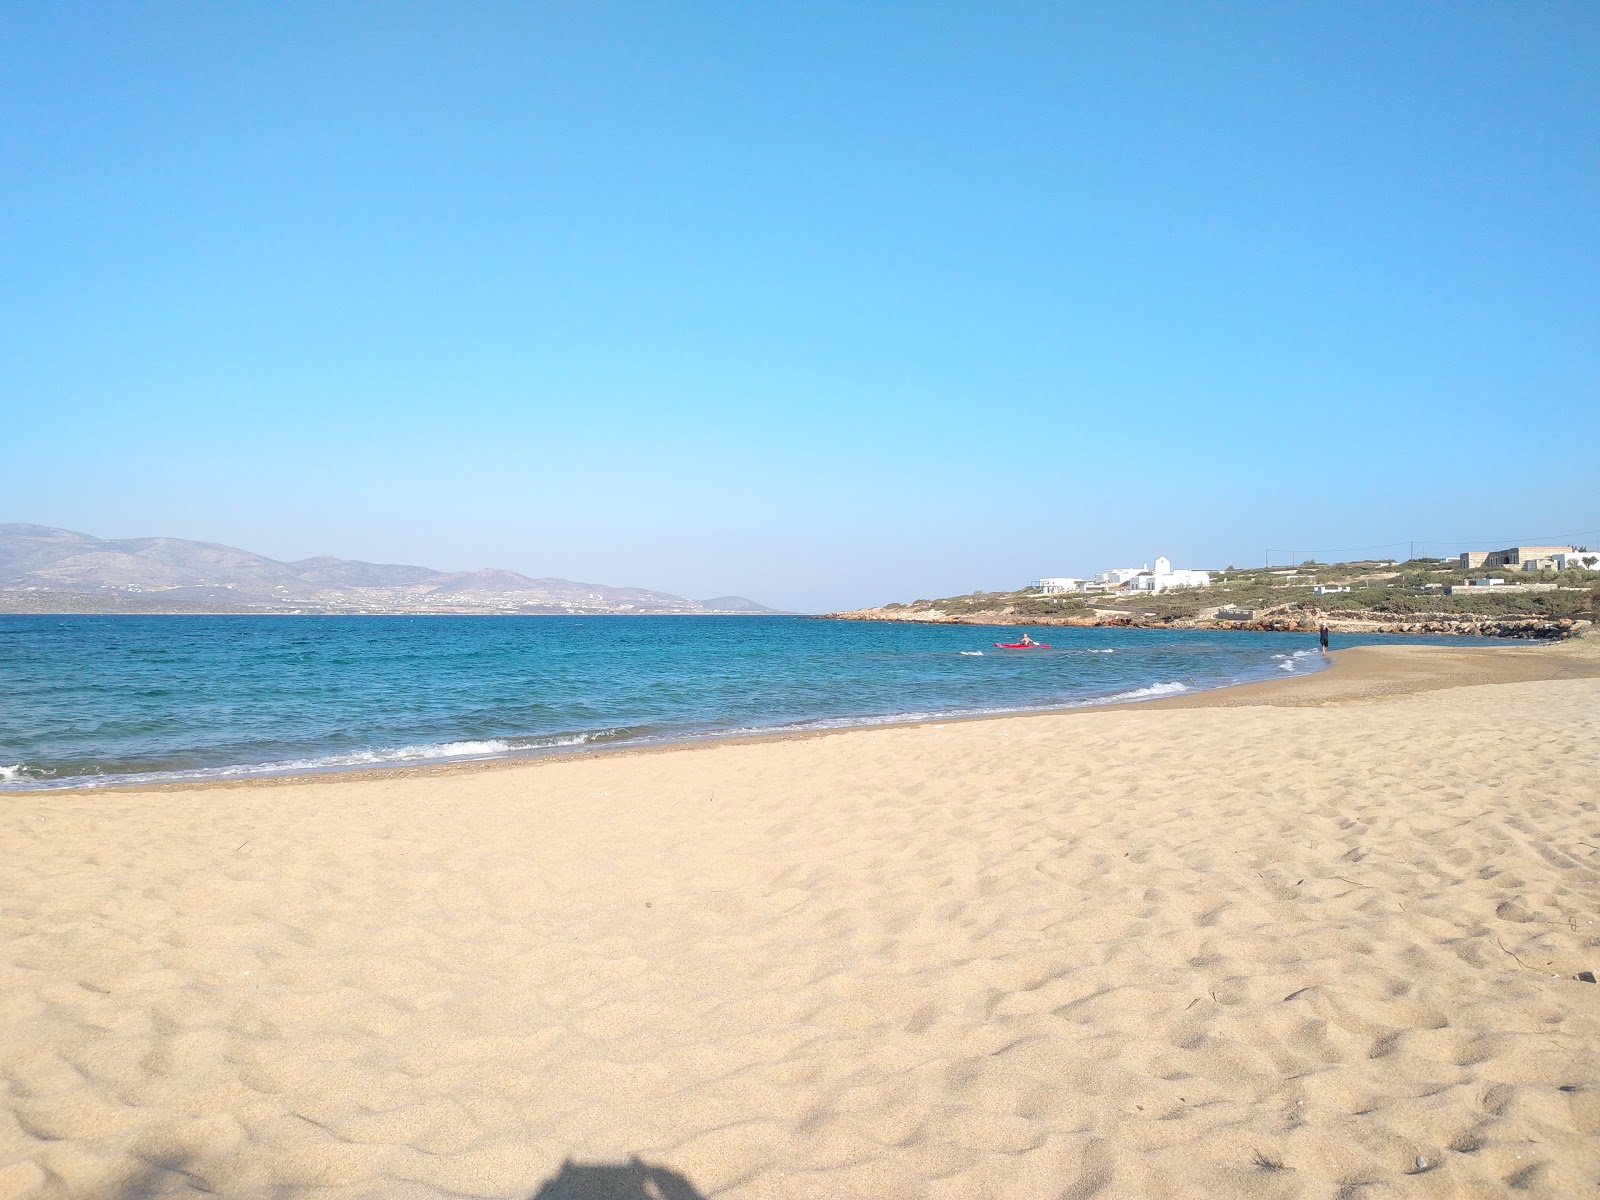 Fotografie cu Glyfa beach cu o suprafață de nisip maro